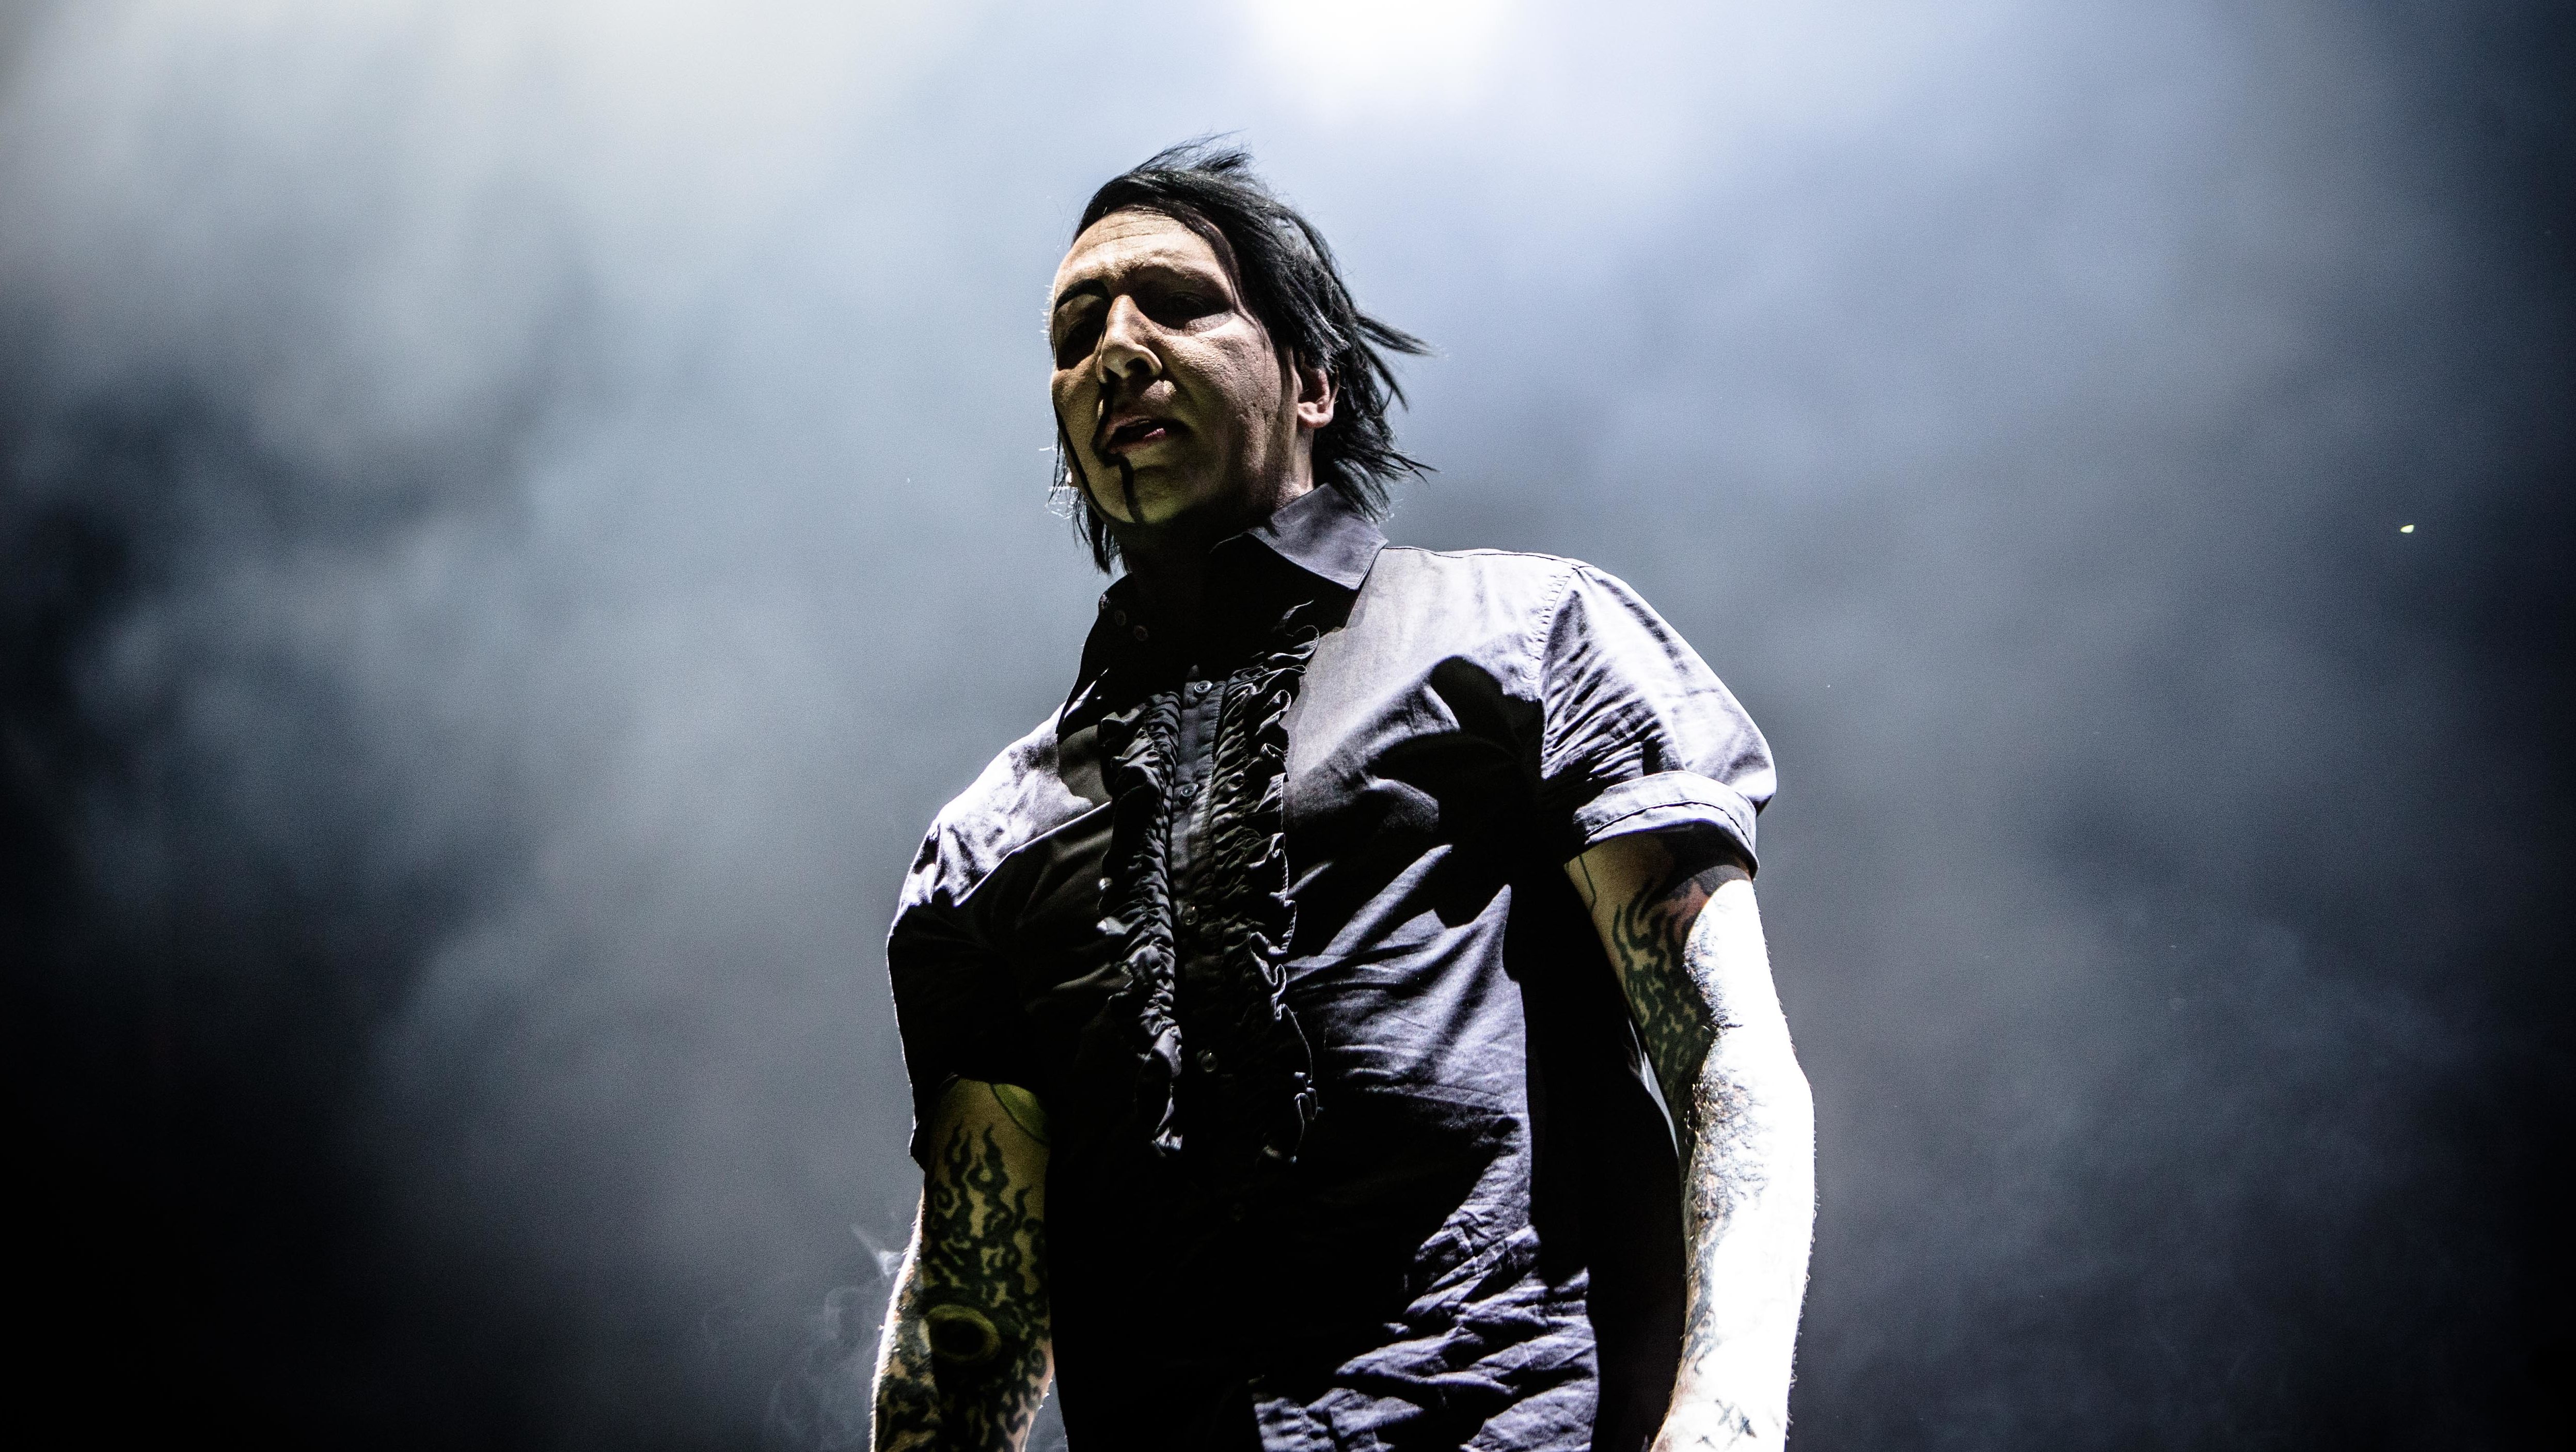 Élve elégetés, fejek szétverése kalapáccsal – egyre súlyosabb vádak érik Marilyn Mansont